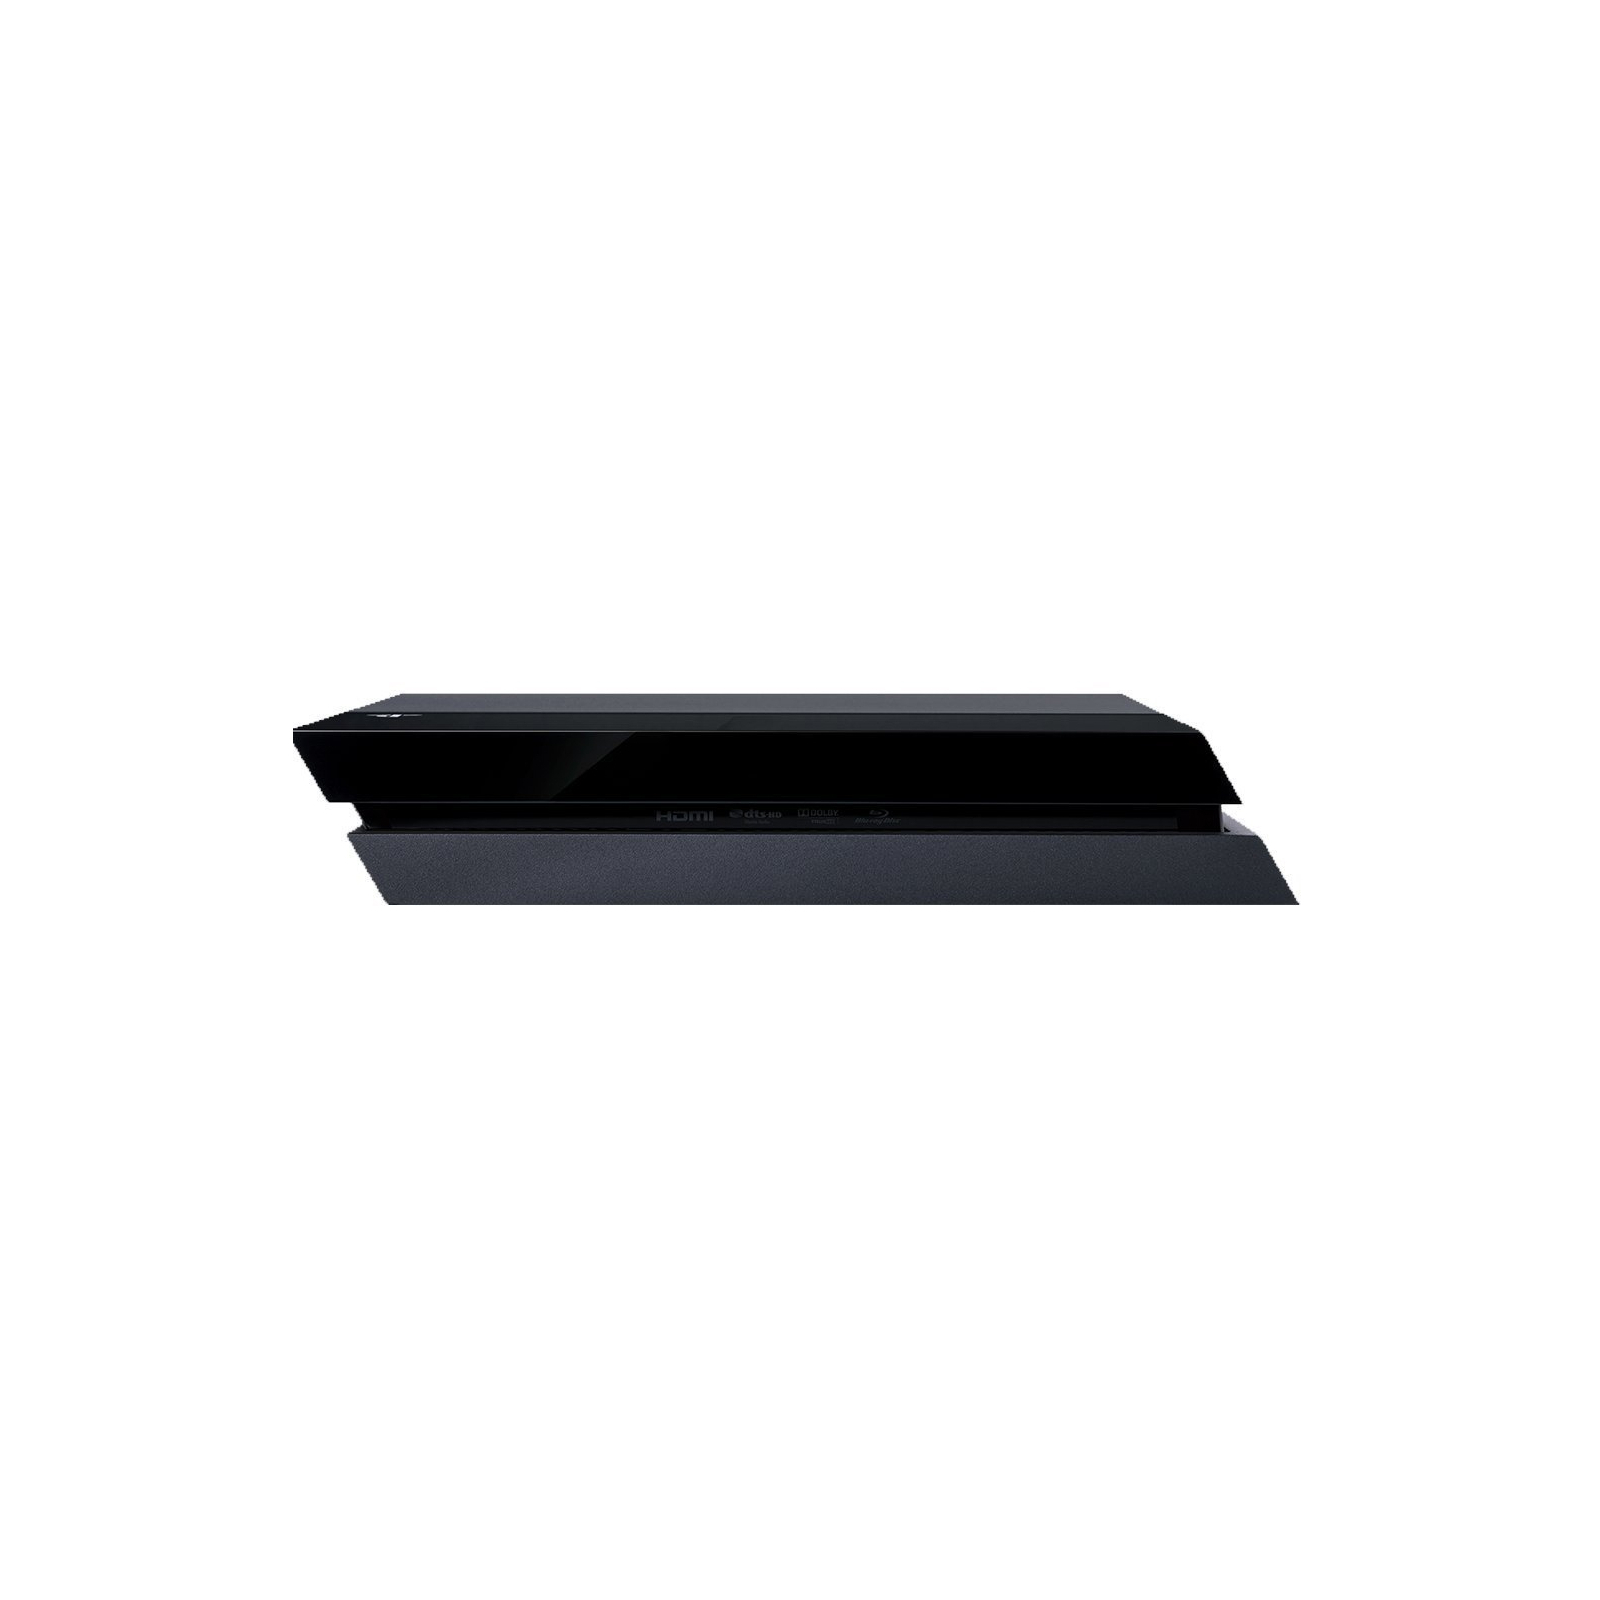 Игровая консоль Sony PlayStation 4 500GB + GTA V (PS719874713) изображение 4